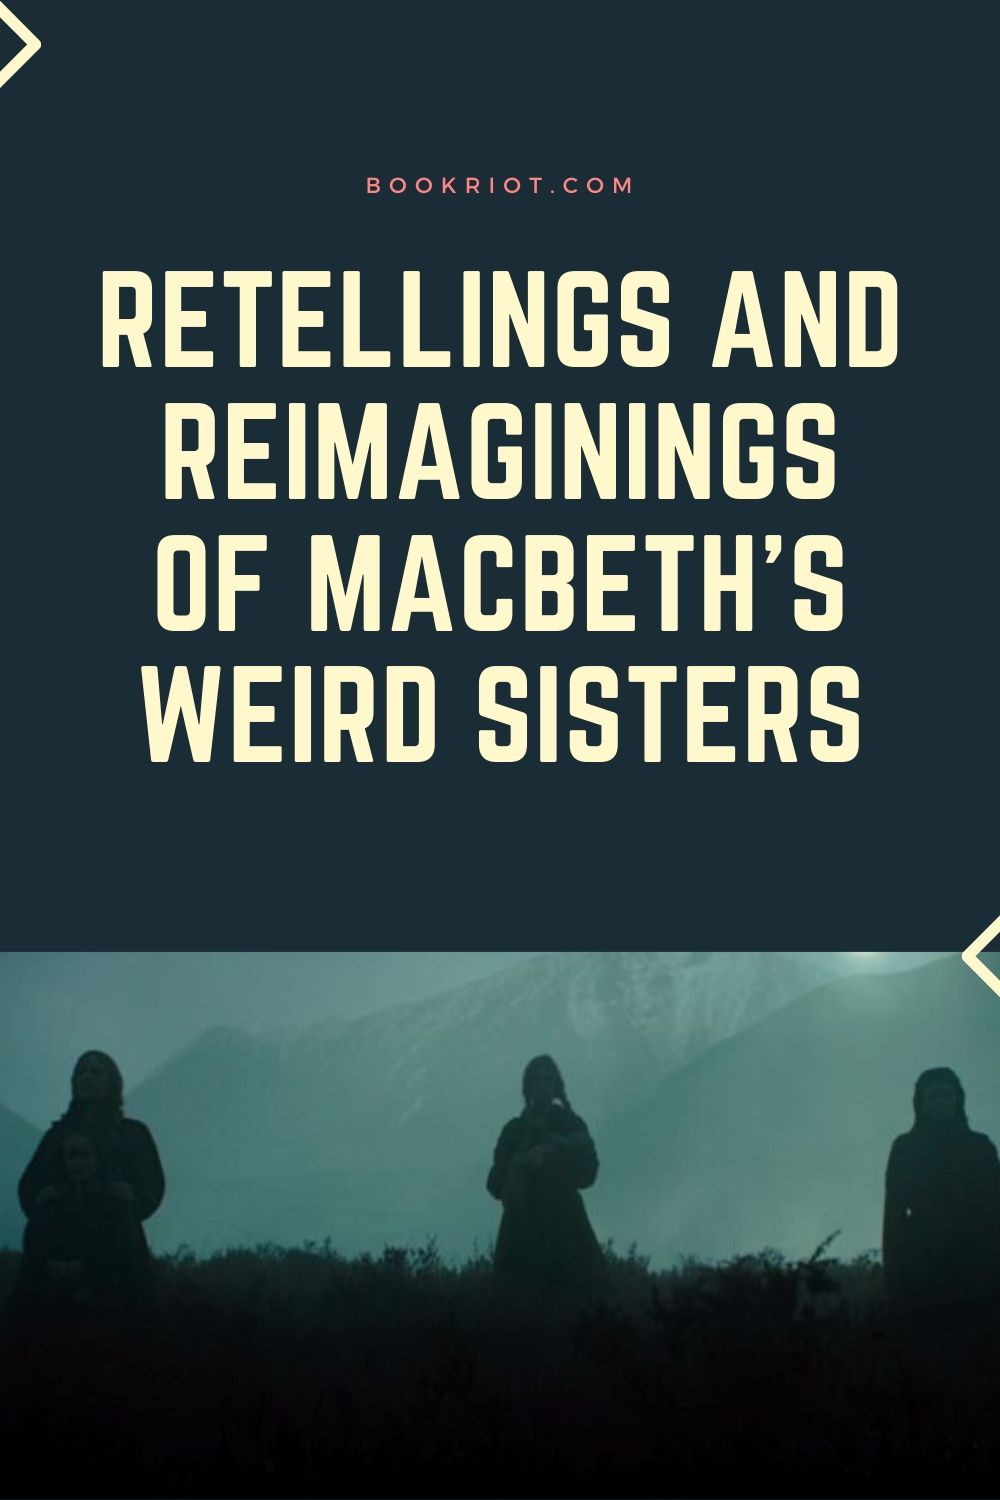 download wyrd sisters macbeth